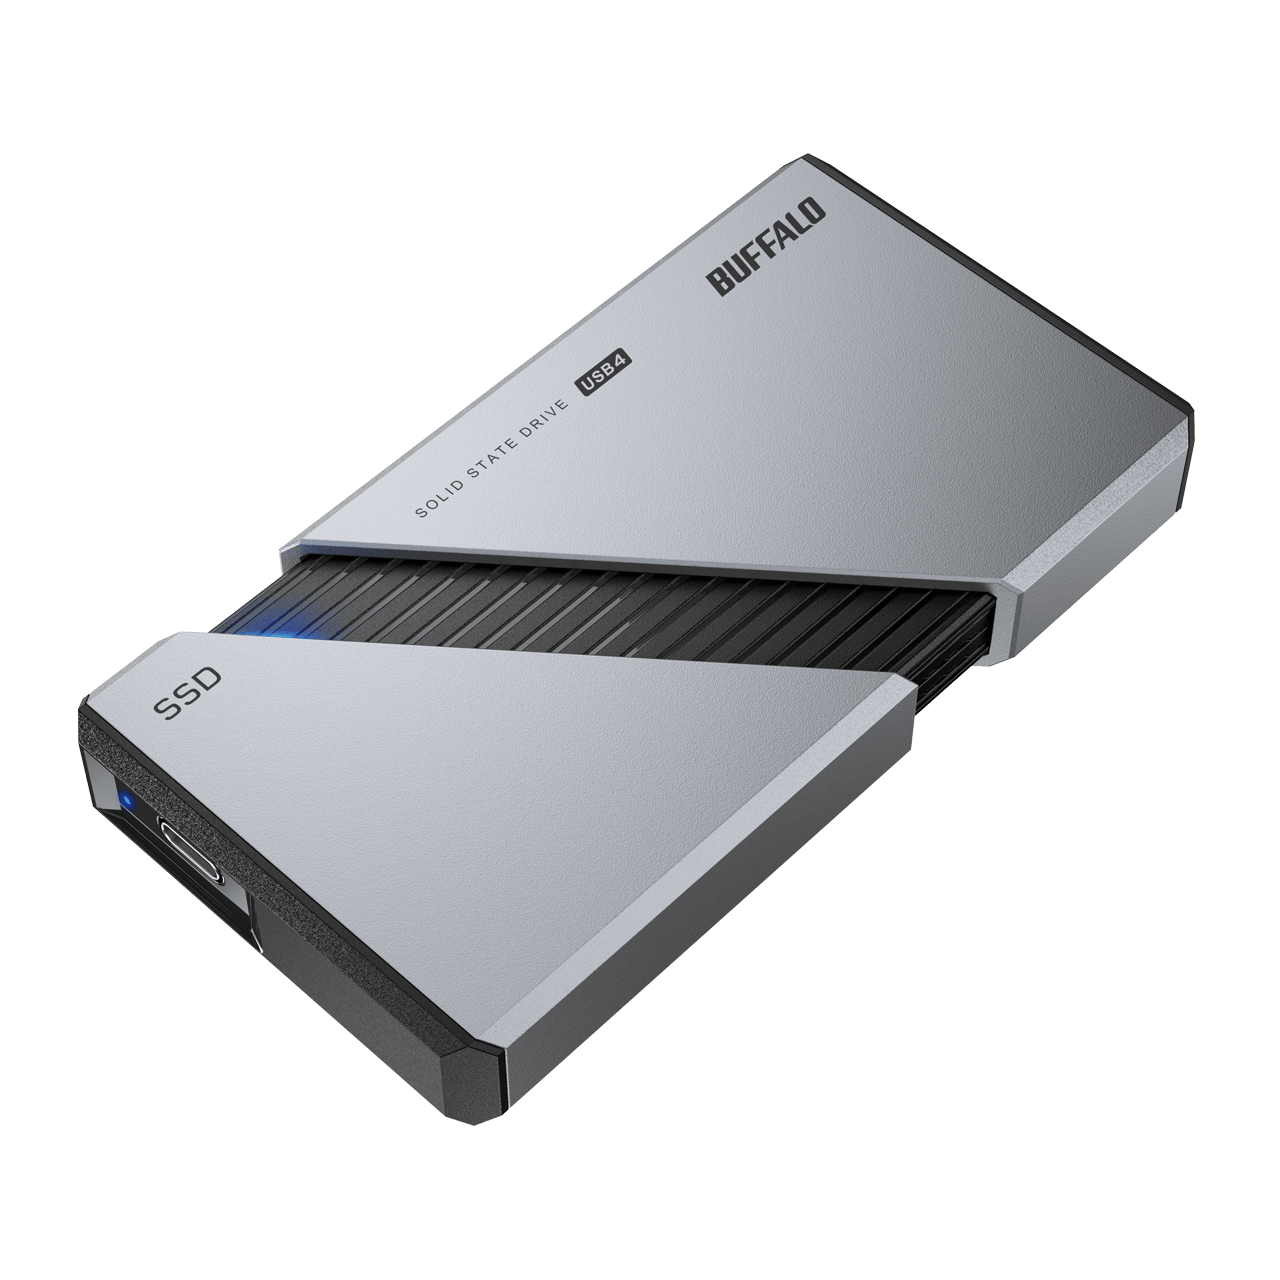 バッファロー、リード3,800MB/sのUSB4対応ポータブルSSDを発売